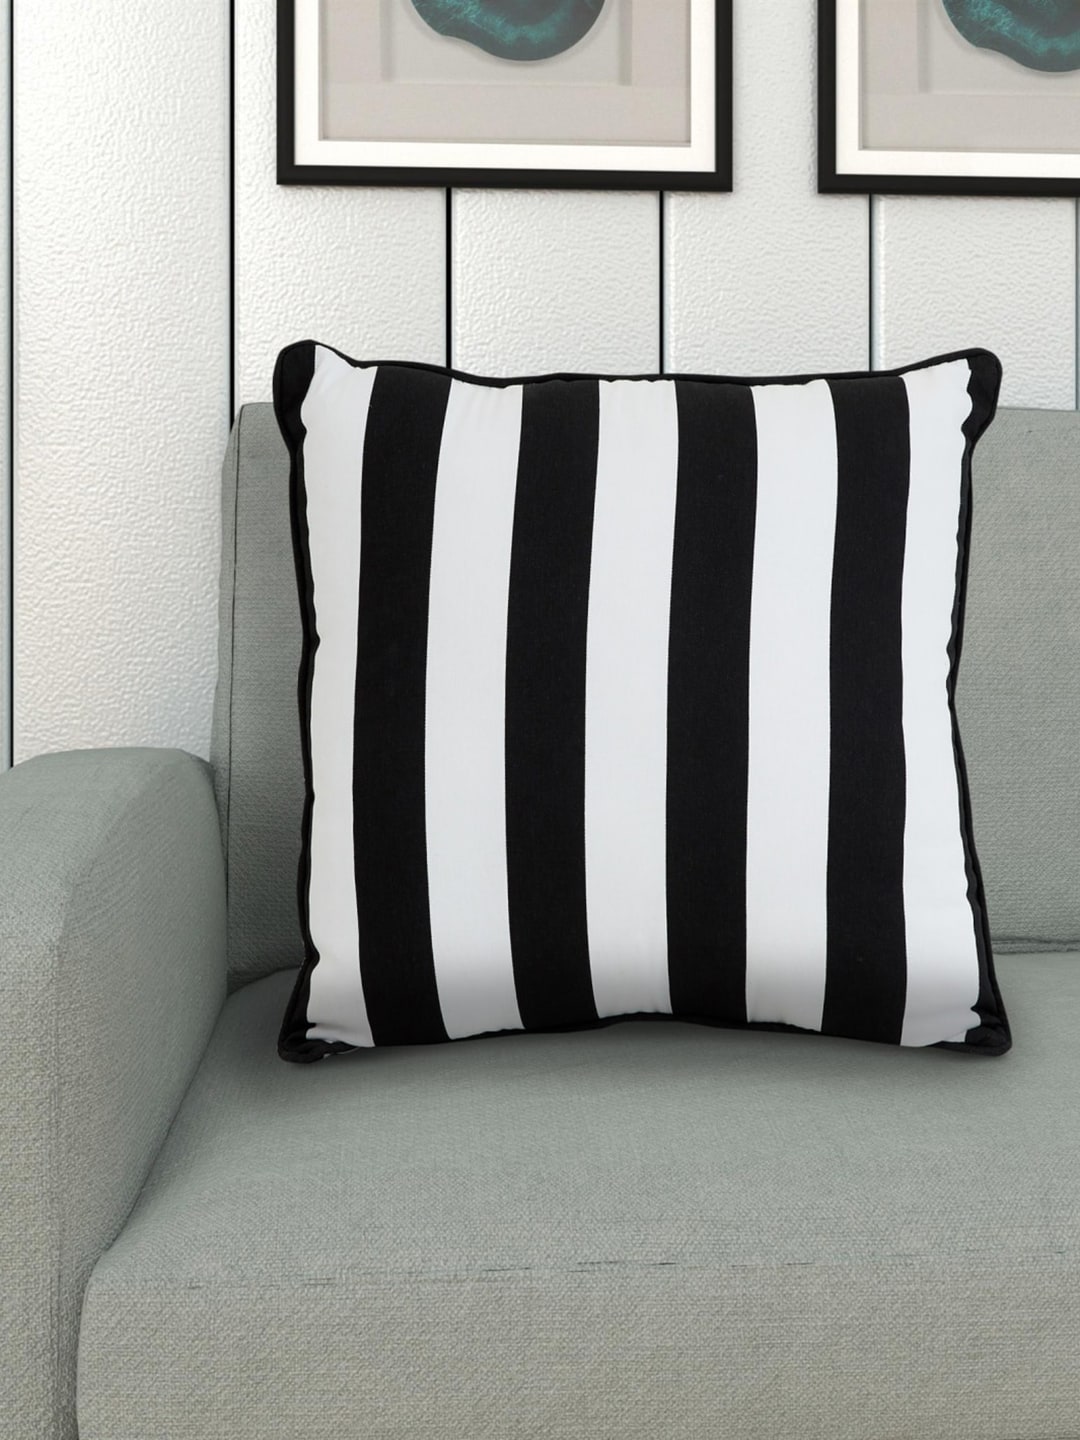 Home Centre Black & White Striped Cotton Square Floor Cushion Price in India